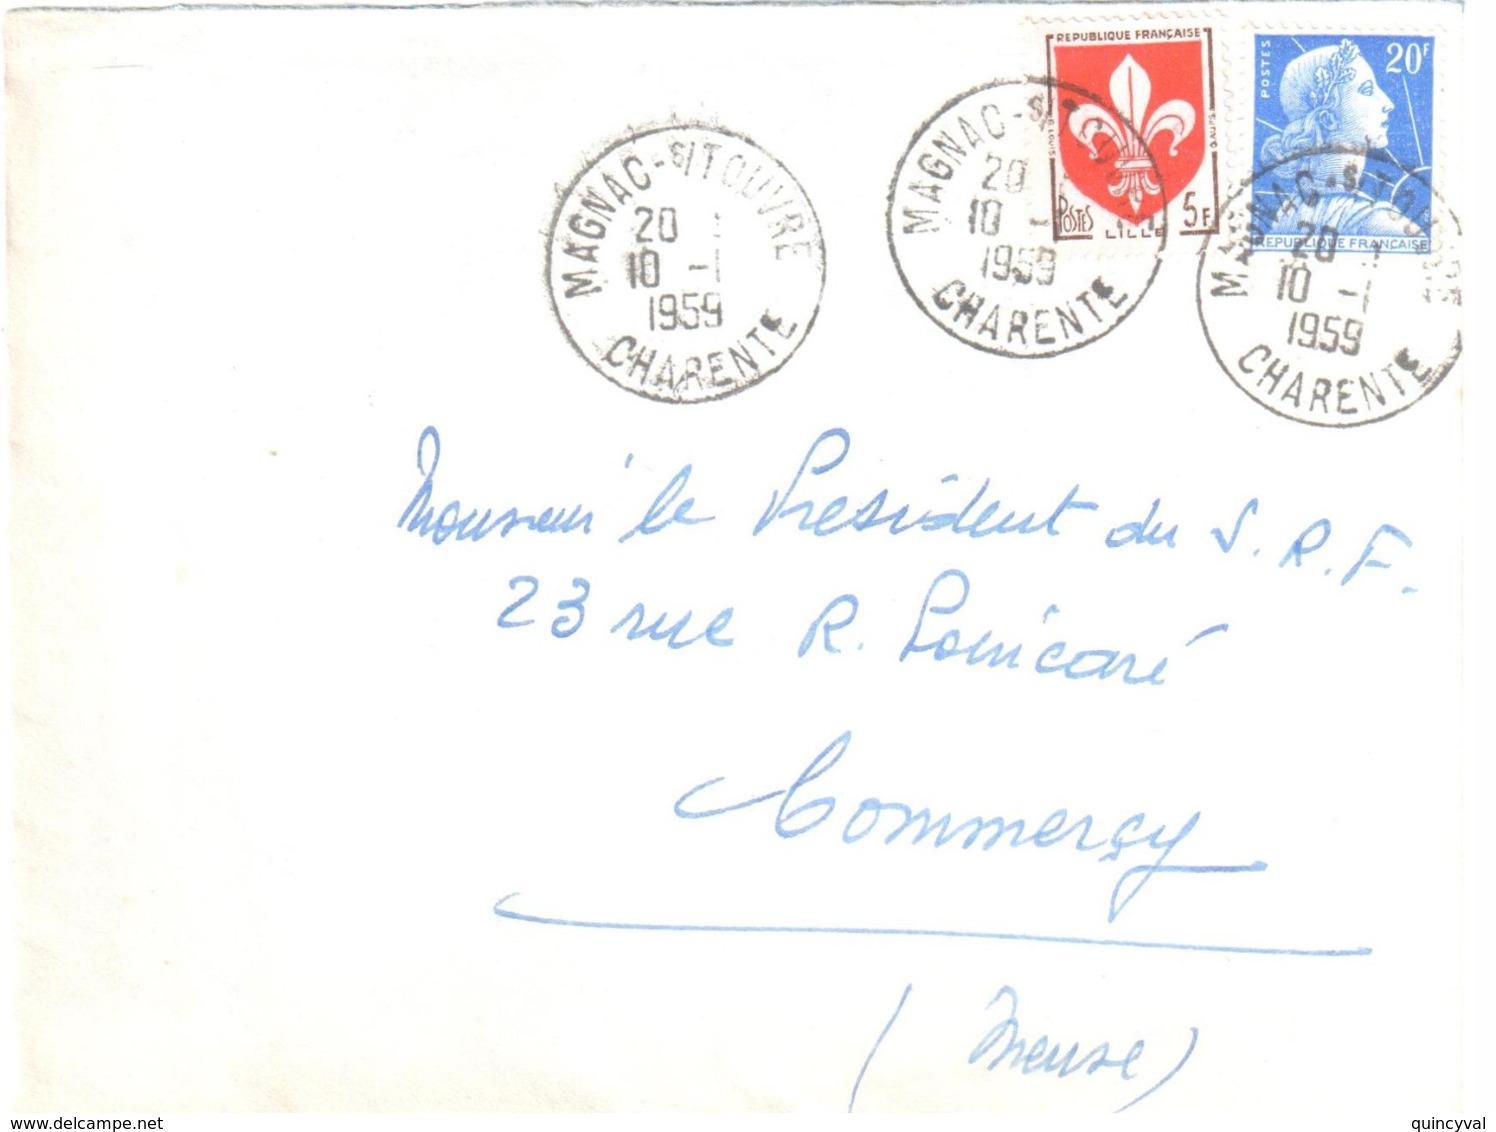 MAGNAC Sur TOUVRE Charente Lettre 20 F Muller 5 F Blason Lille Yv 1011B 1186 Ob 10 1 1959 Dest Commercy Meuse - Lettres & Documents